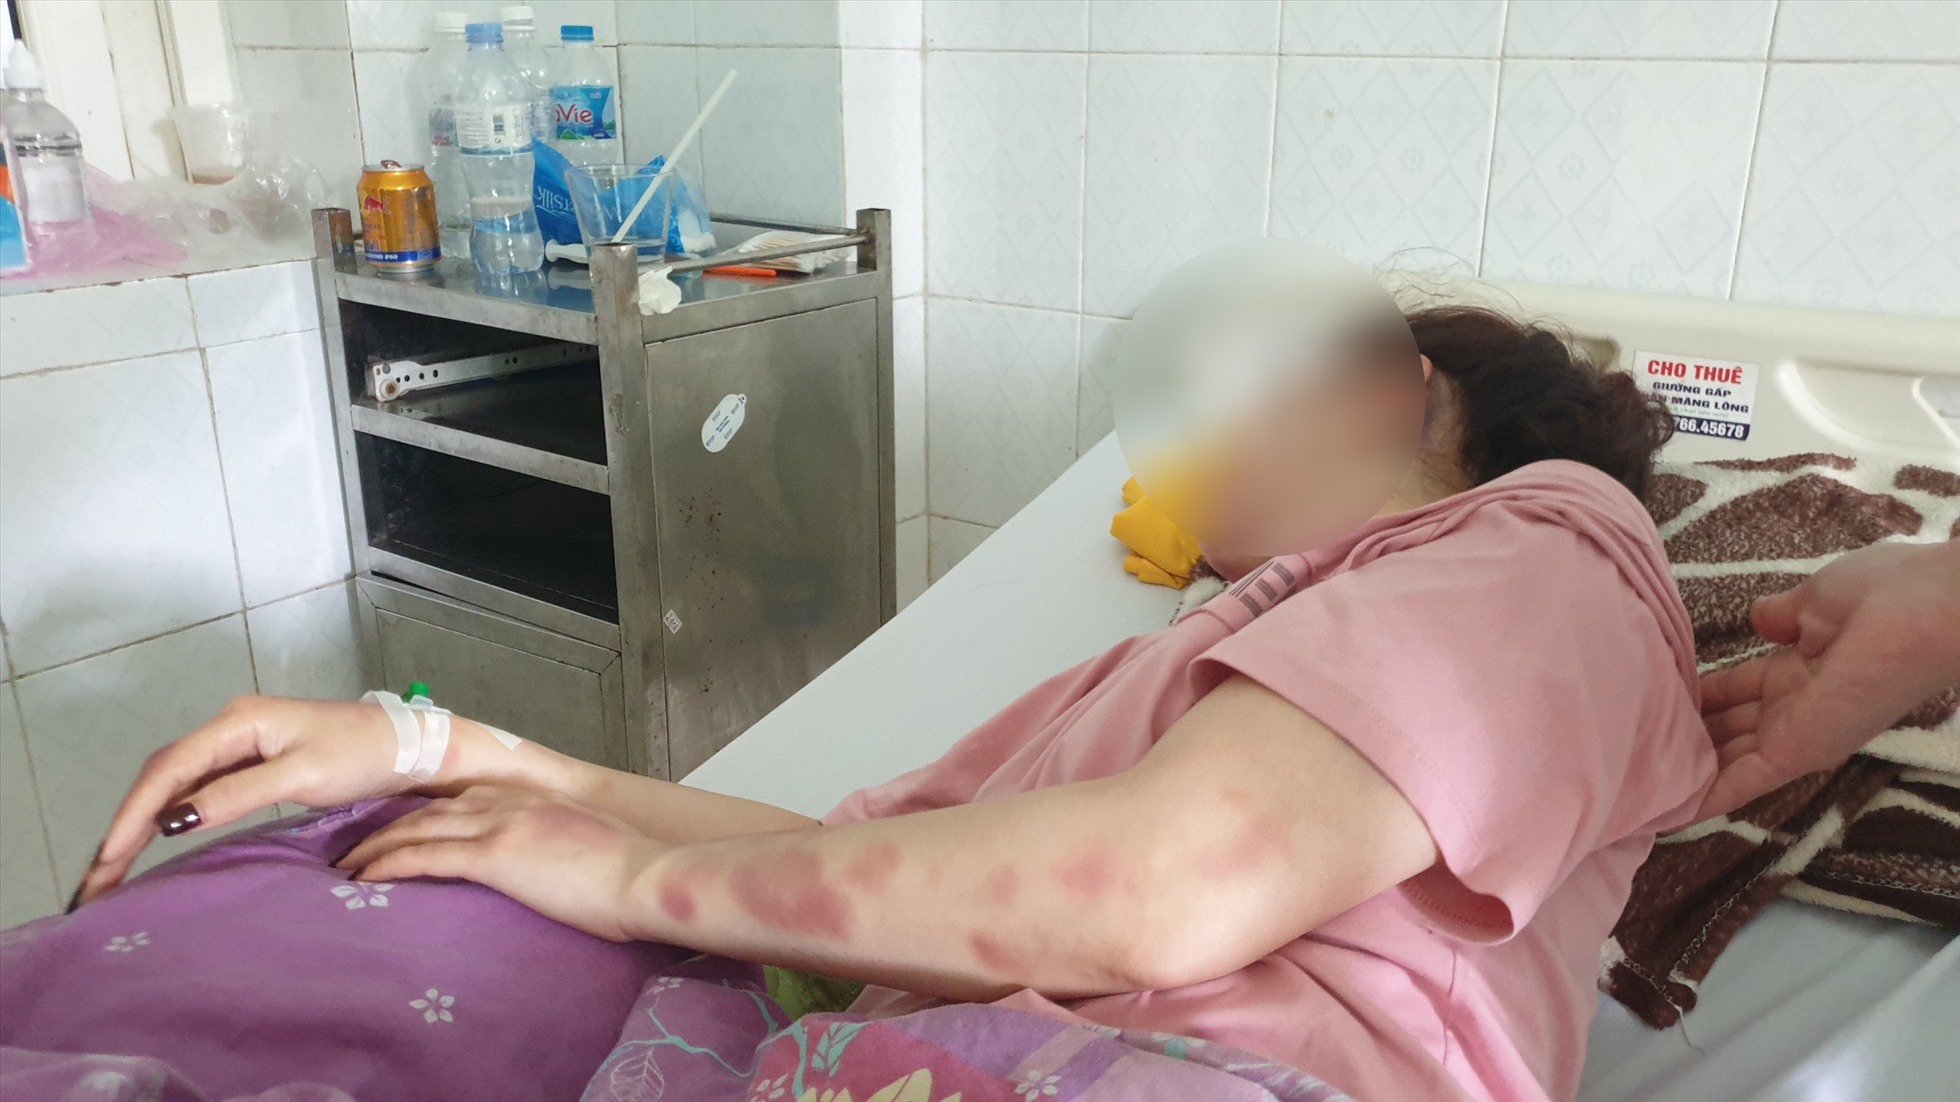 Sau khi bị đánh, chị N.T.V. phải nhập viện điều trị ở Bệnh viên Đa khoa tỉnh Thanh Hóa. Ảnh: Q.D